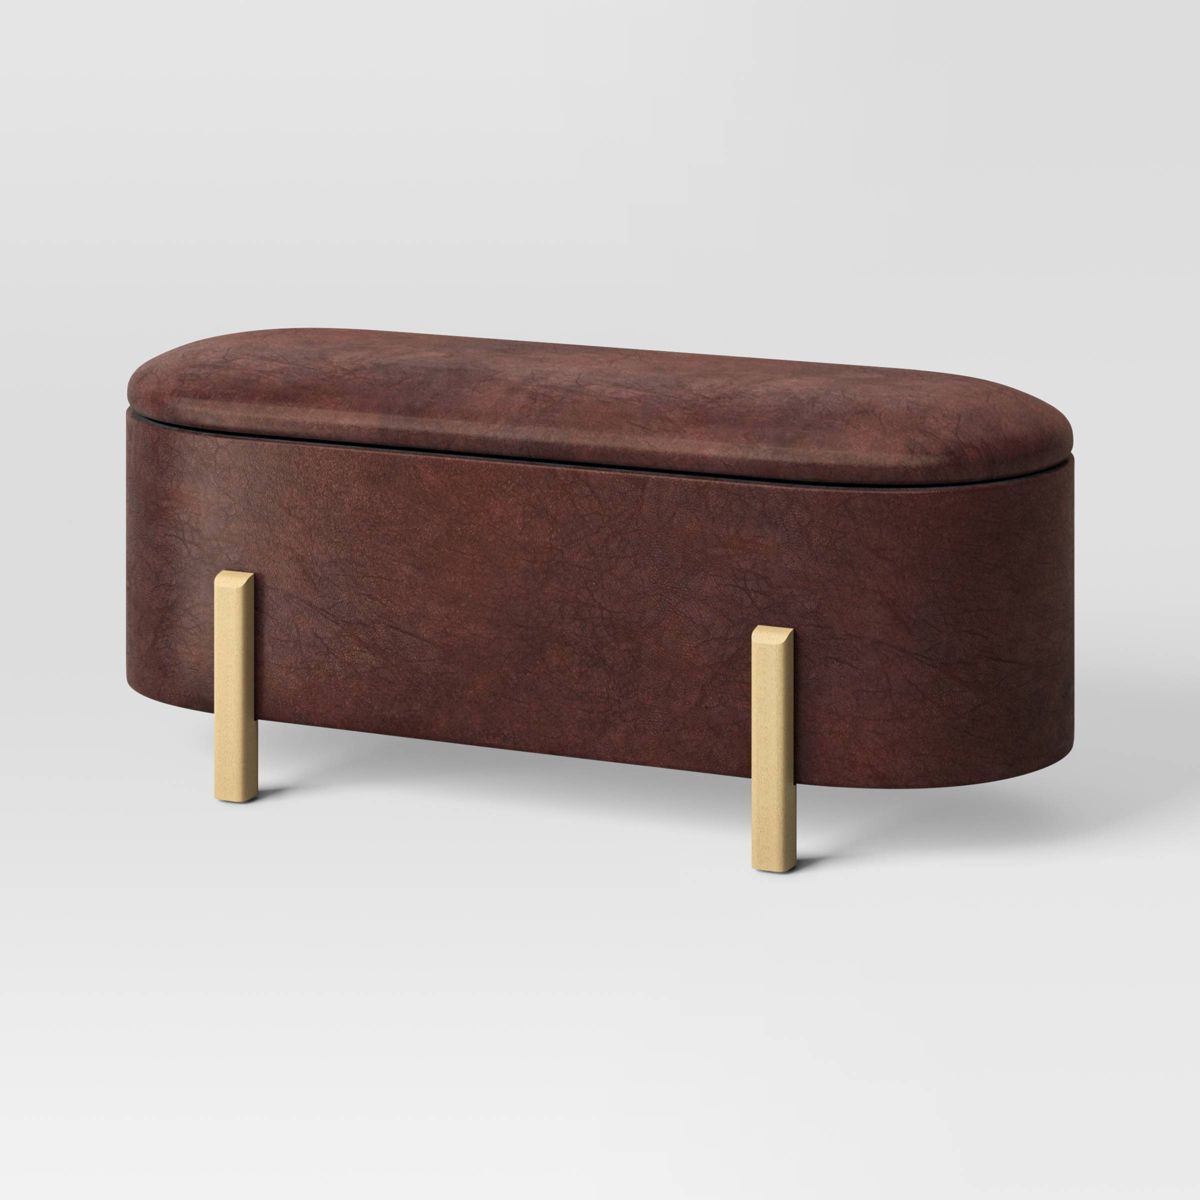 Storage Bench with Wooden Legs Dark Brown - Threshold™ | Target